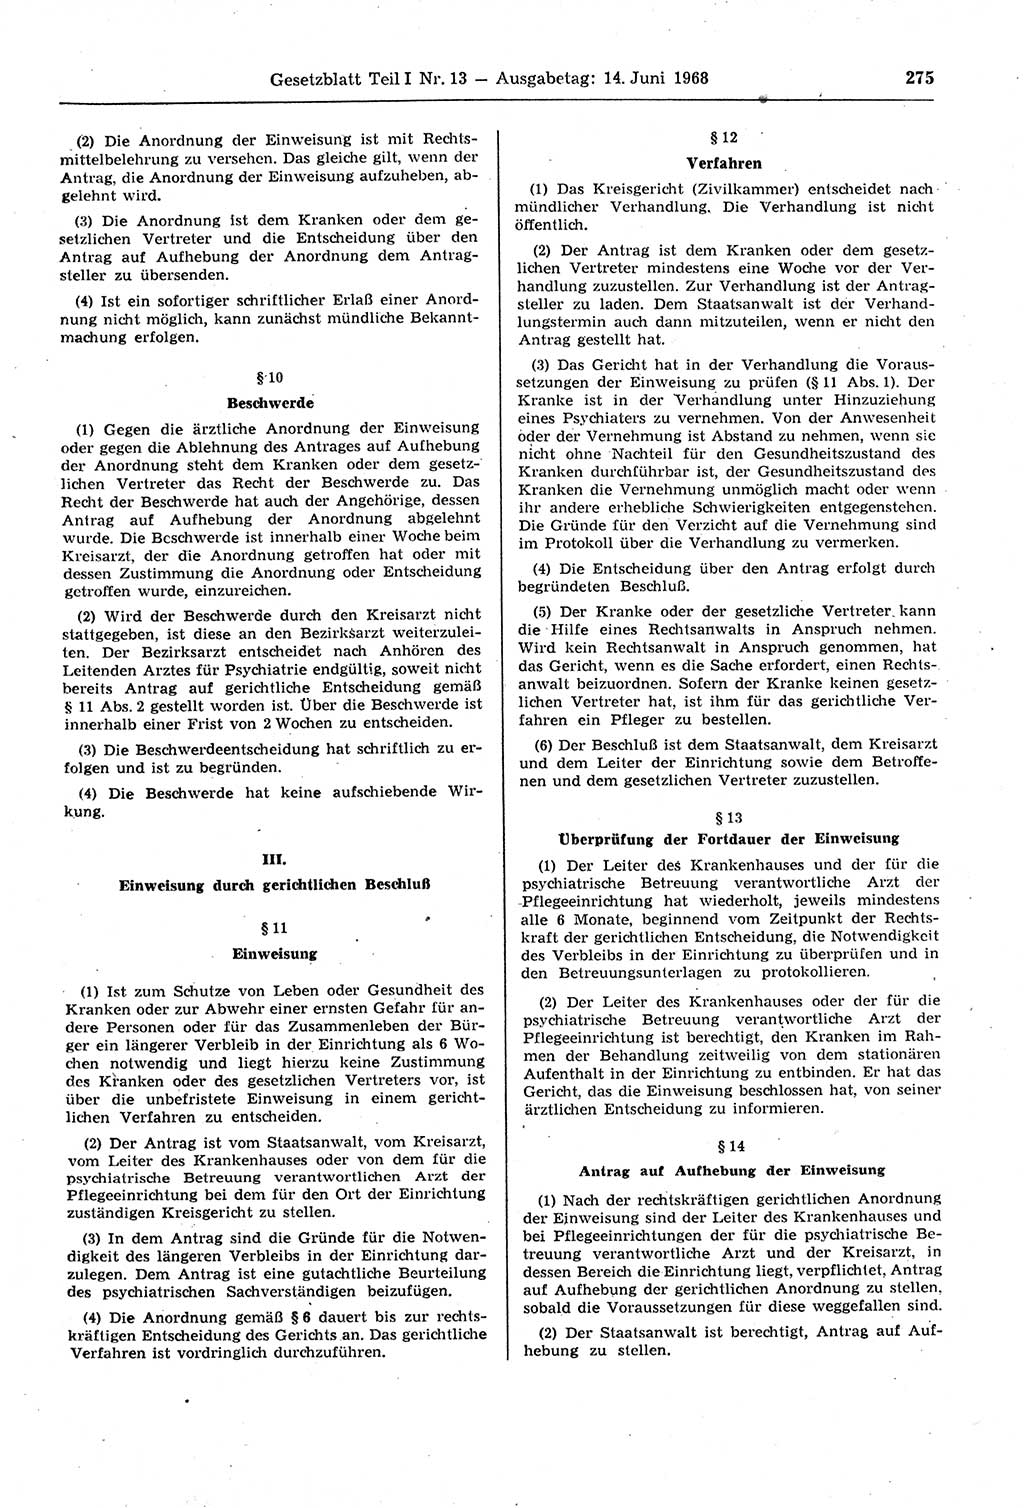 Gesetzblatt (GBl.) der Deutschen Demokratischen Republik (DDR) Teil Ⅰ 1968, Seite 275 (GBl. DDR Ⅰ 1968, S. 275)